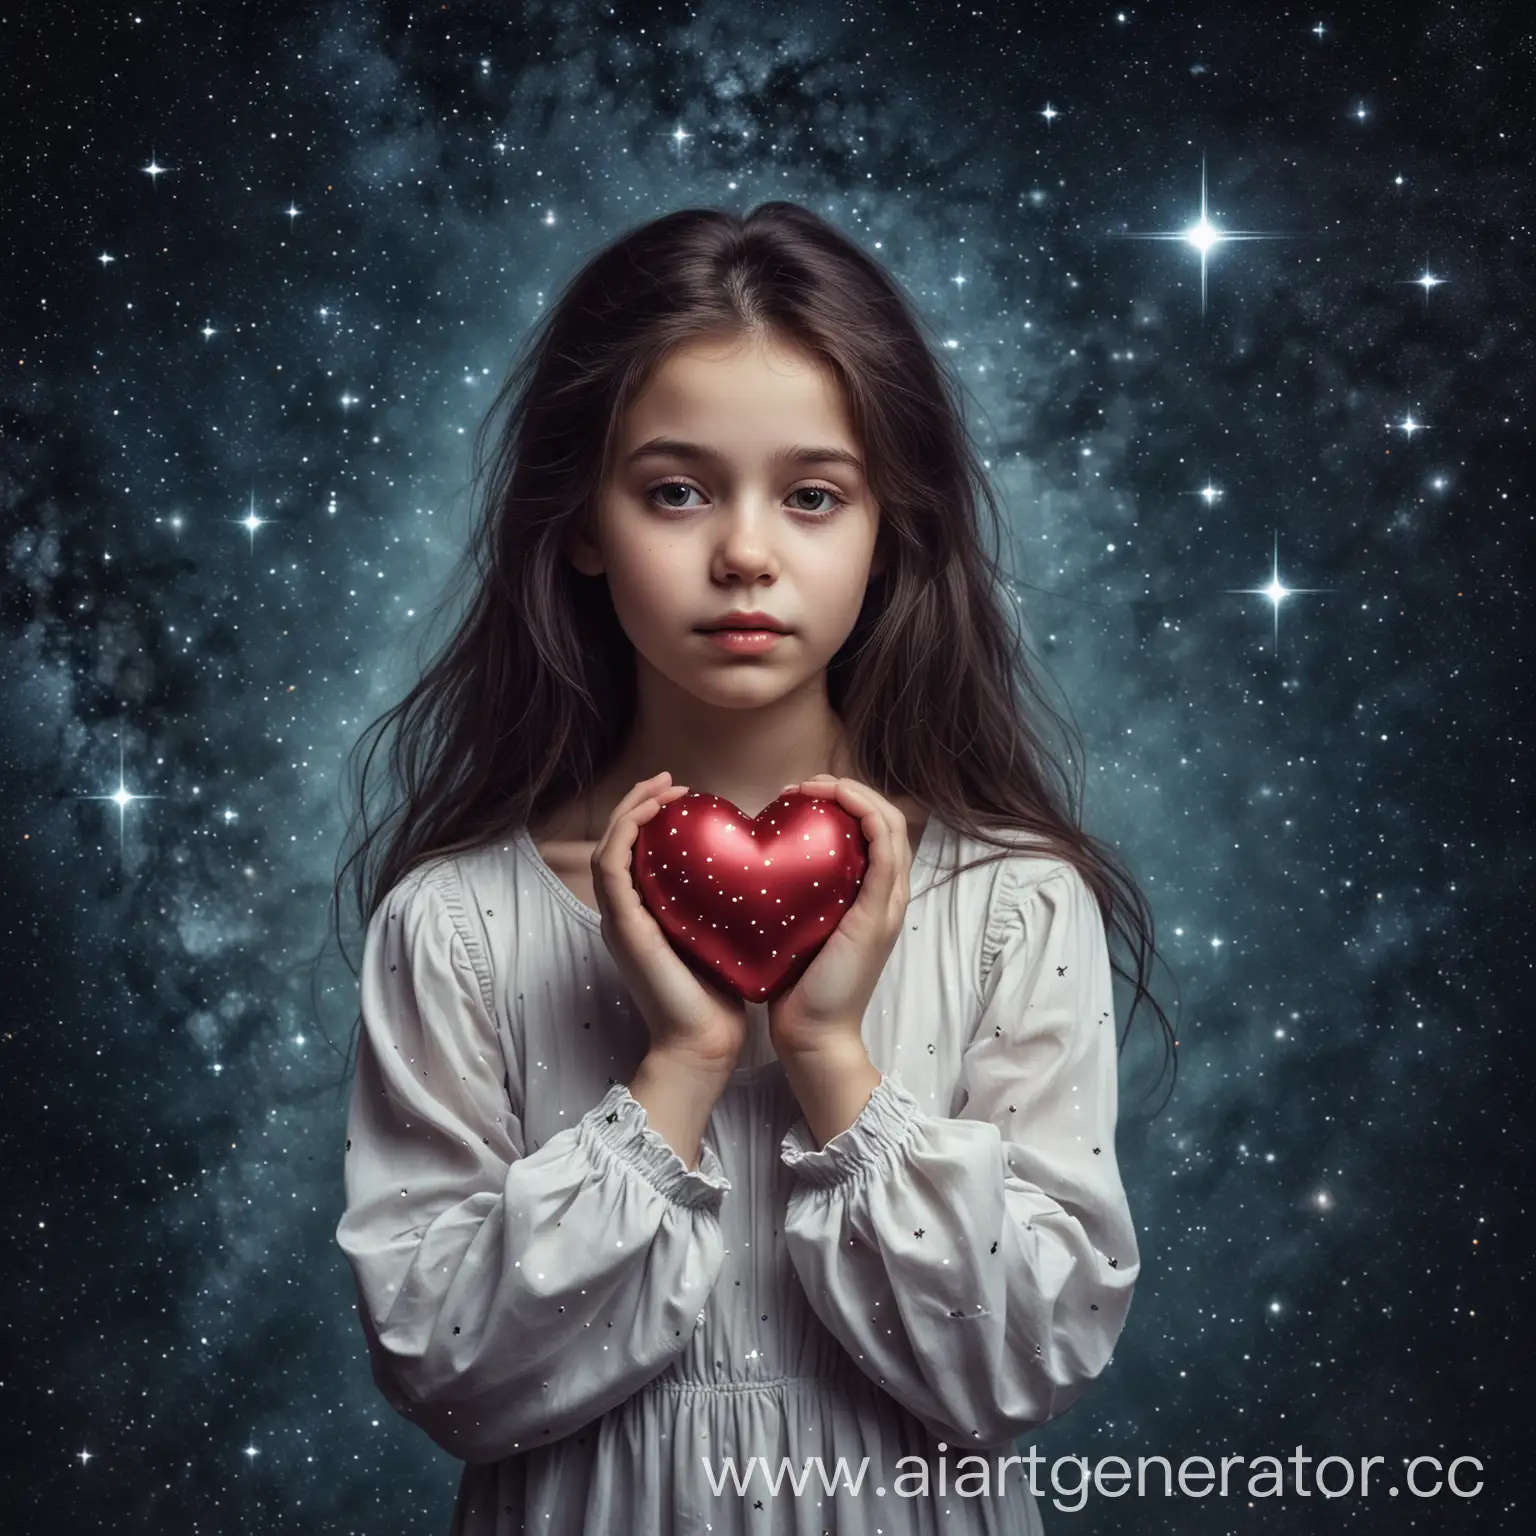 грустная девушка держит в руках своё сердечко. на фоне звёзды и космос